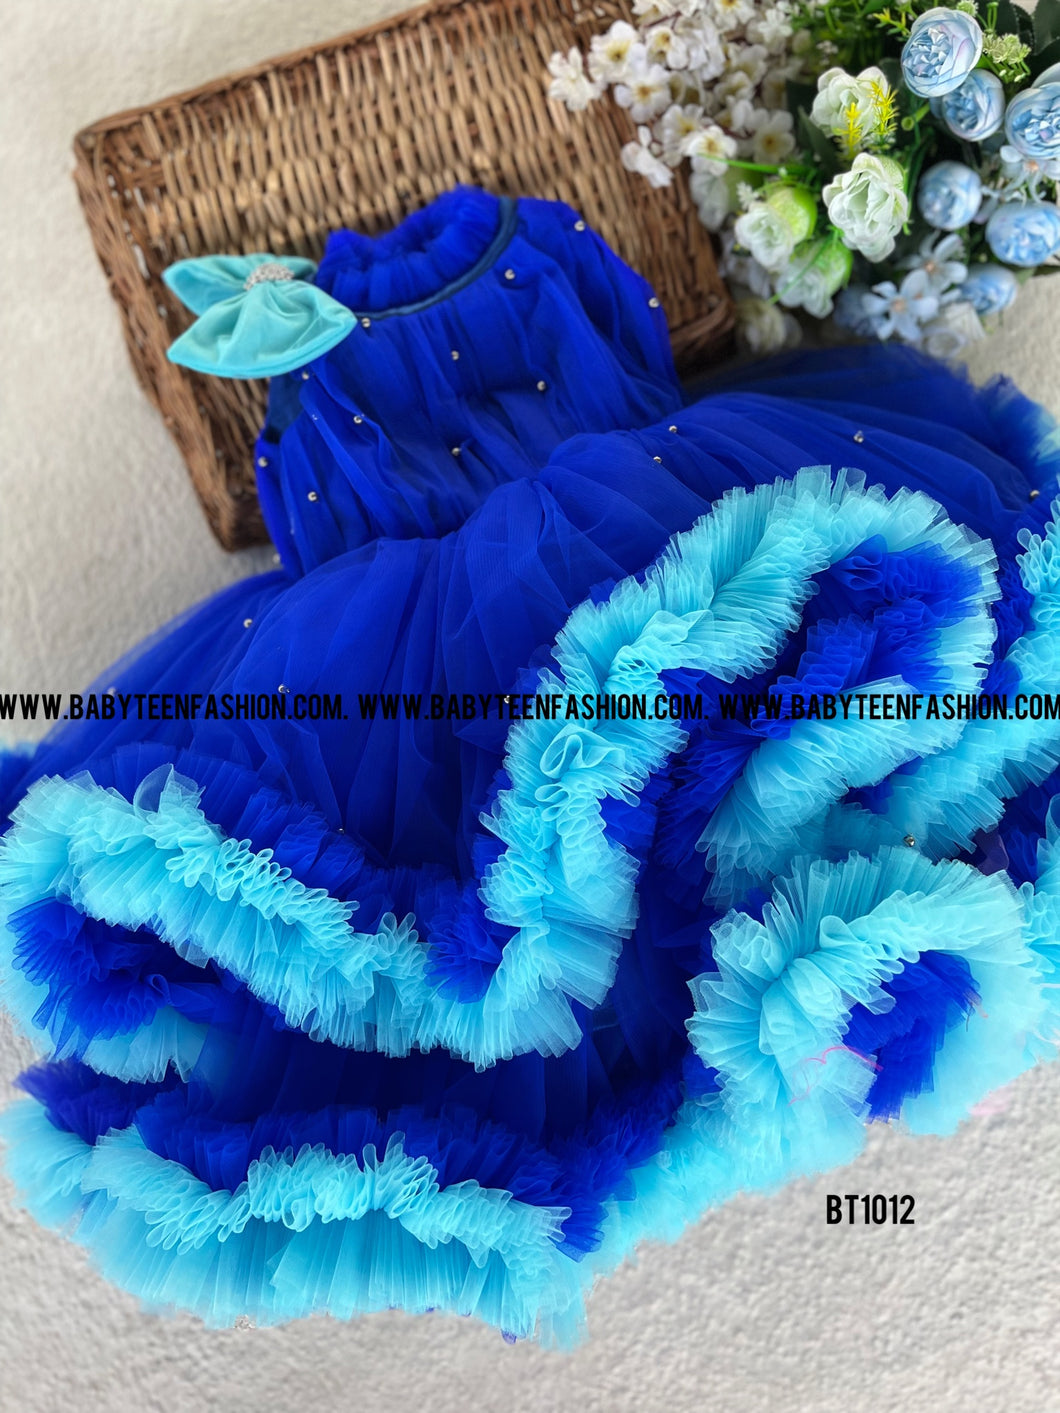 BT1012 Ocean Whirl Party Dress